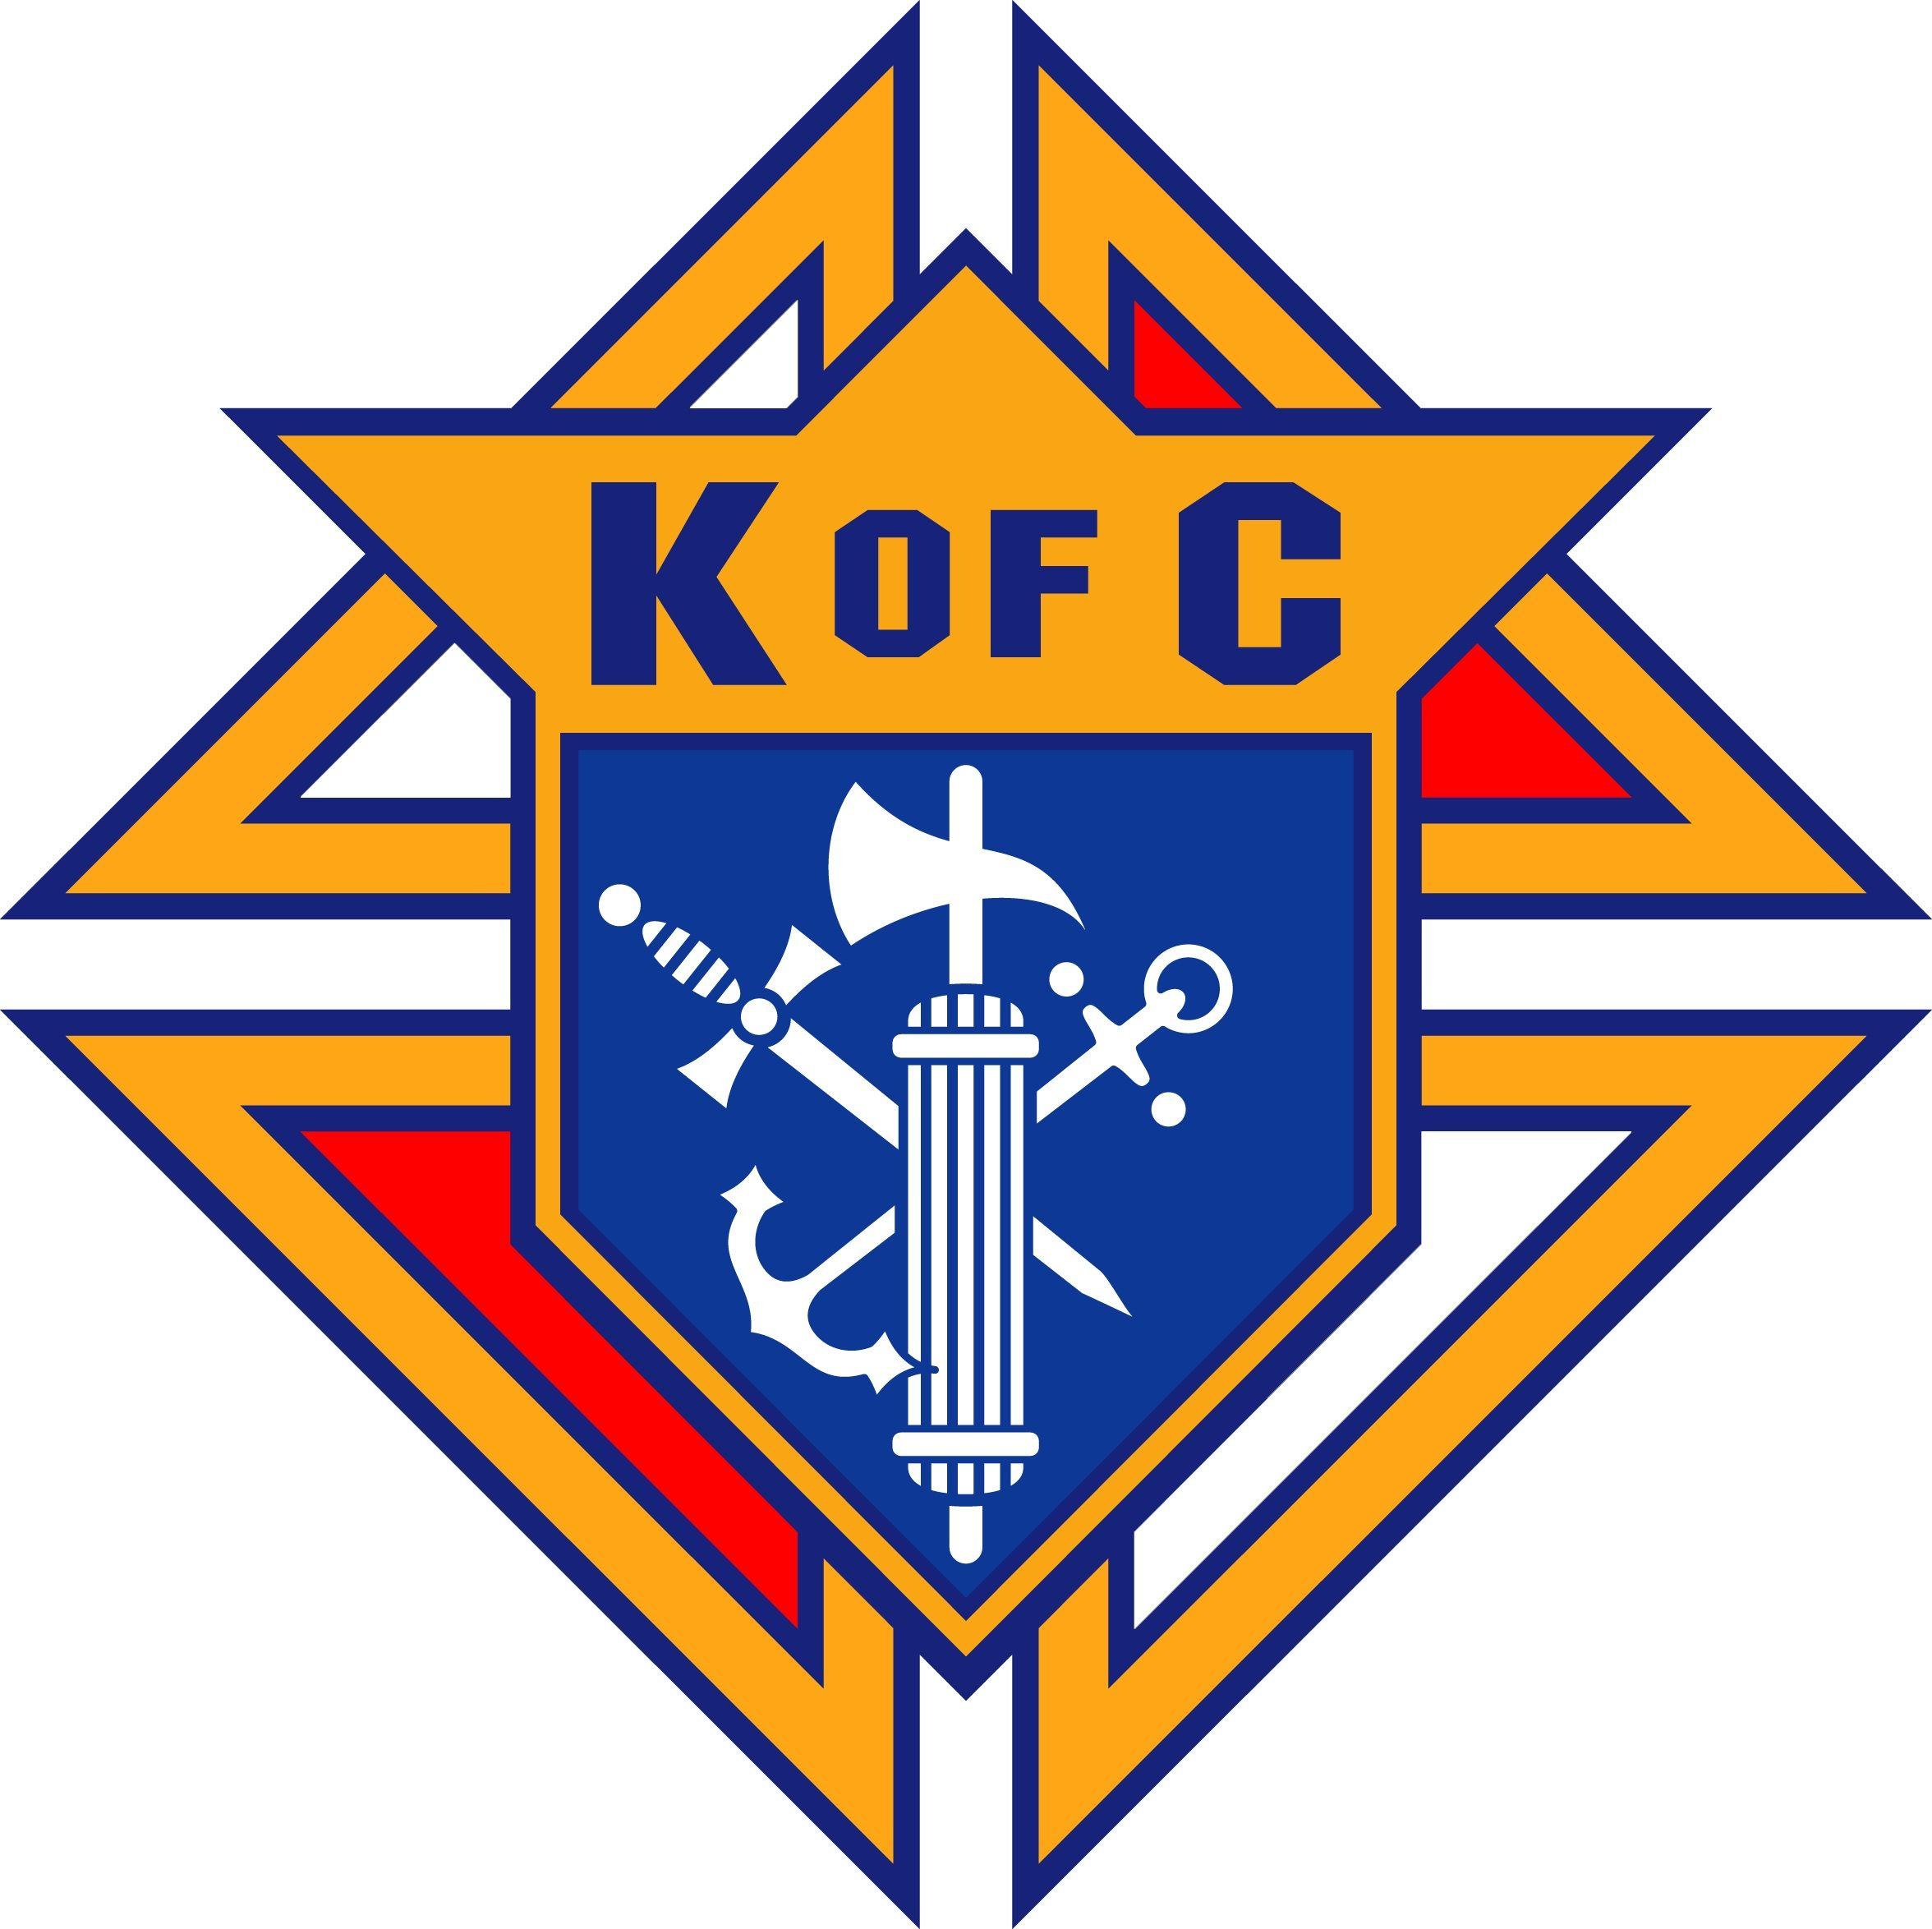 KofC Logo - kofc-logo-jpg - newsnowdc.com